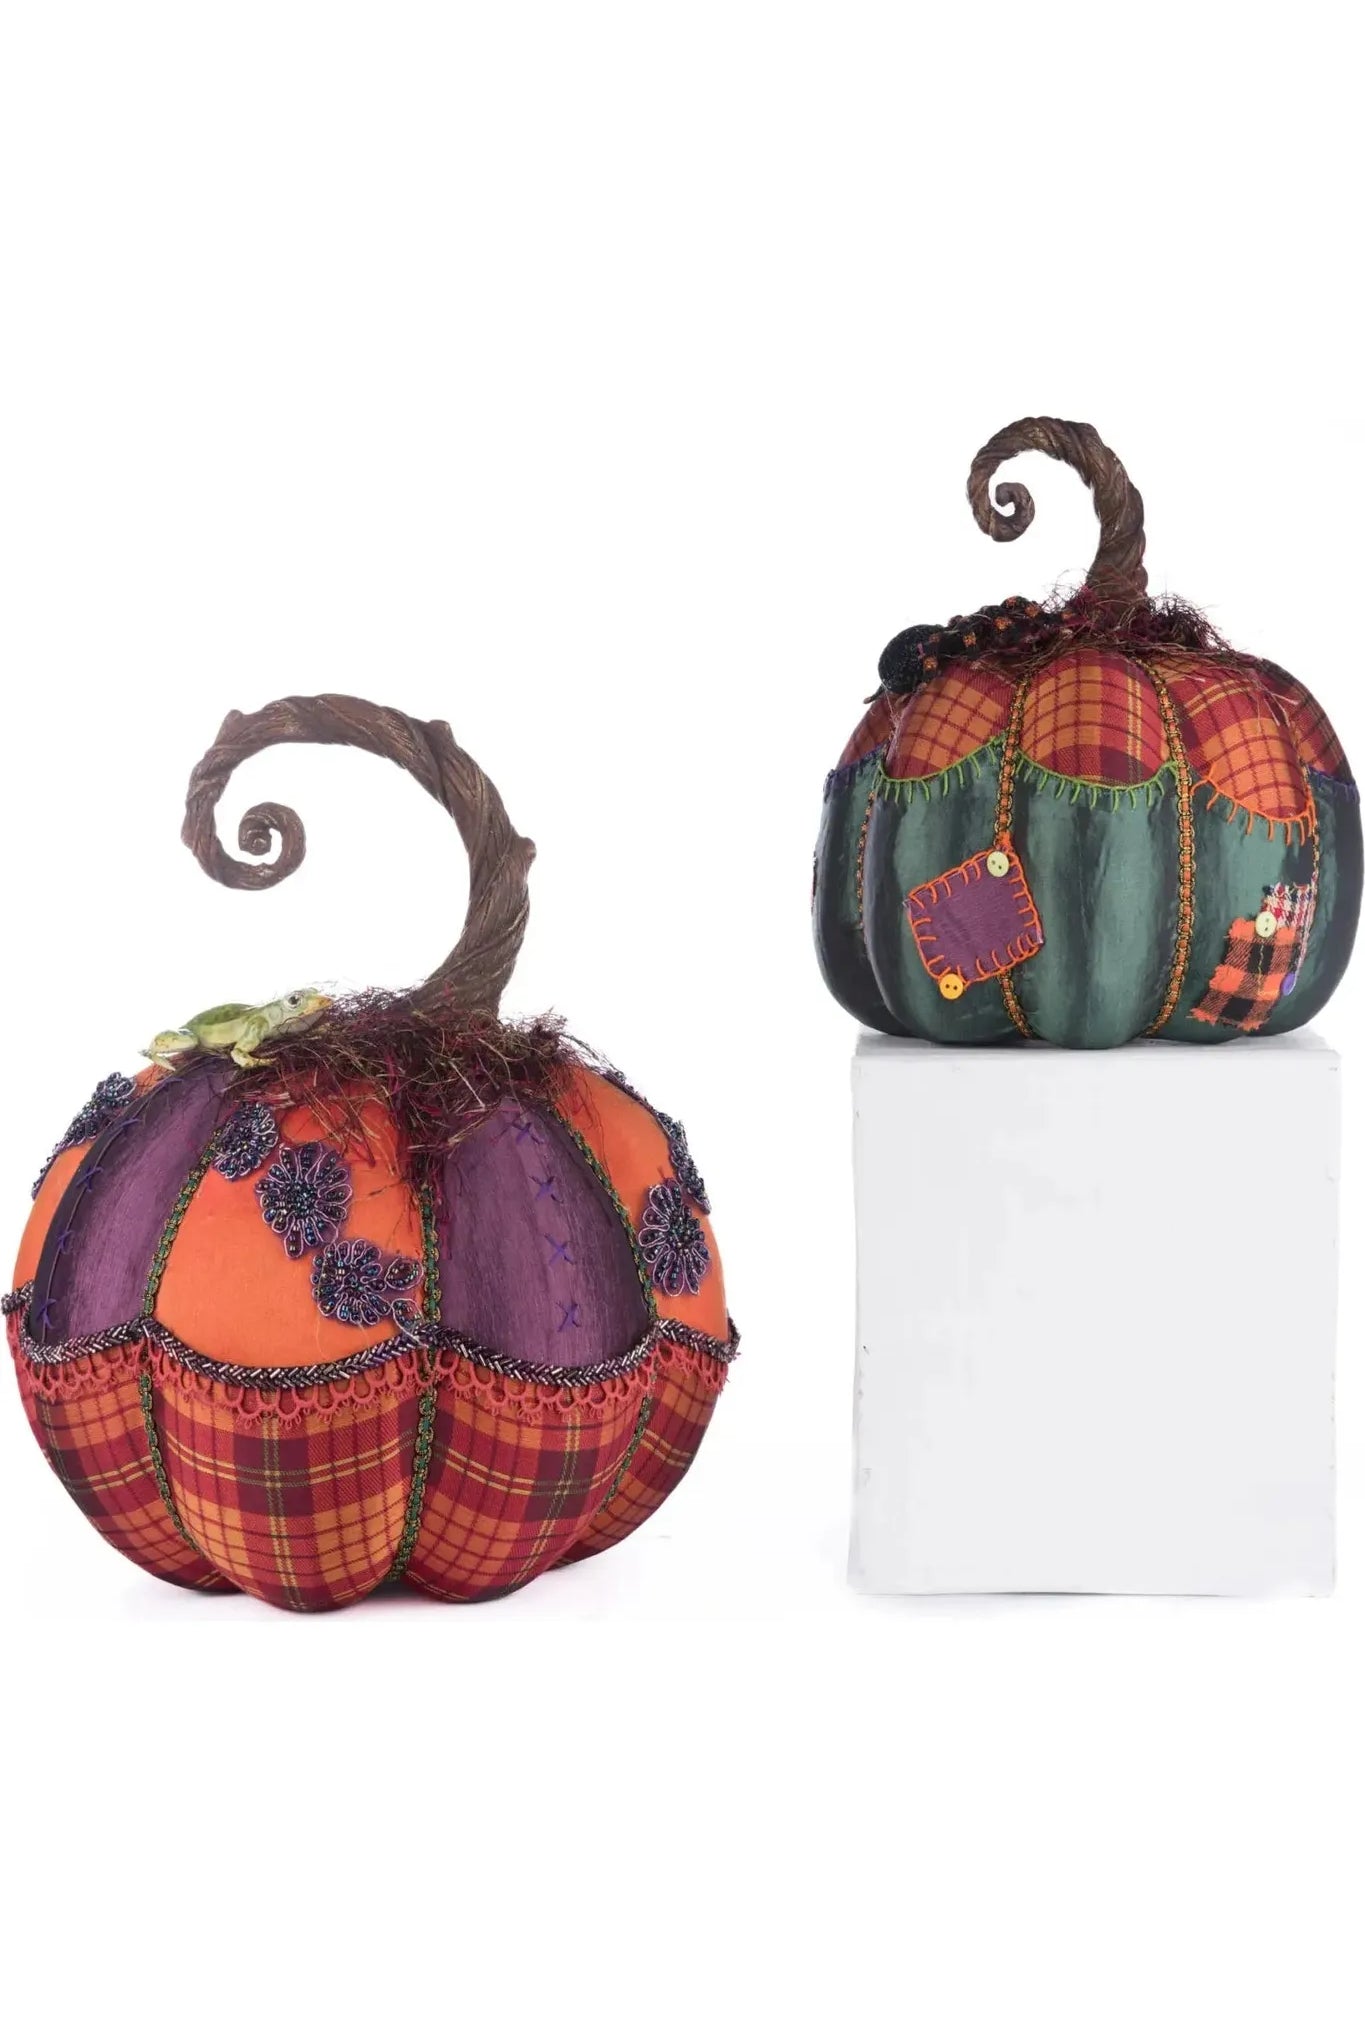 Broomstick Acres Pumpkins Set Of 2 - Michelle's aDOORable Creations - Halloween Decor